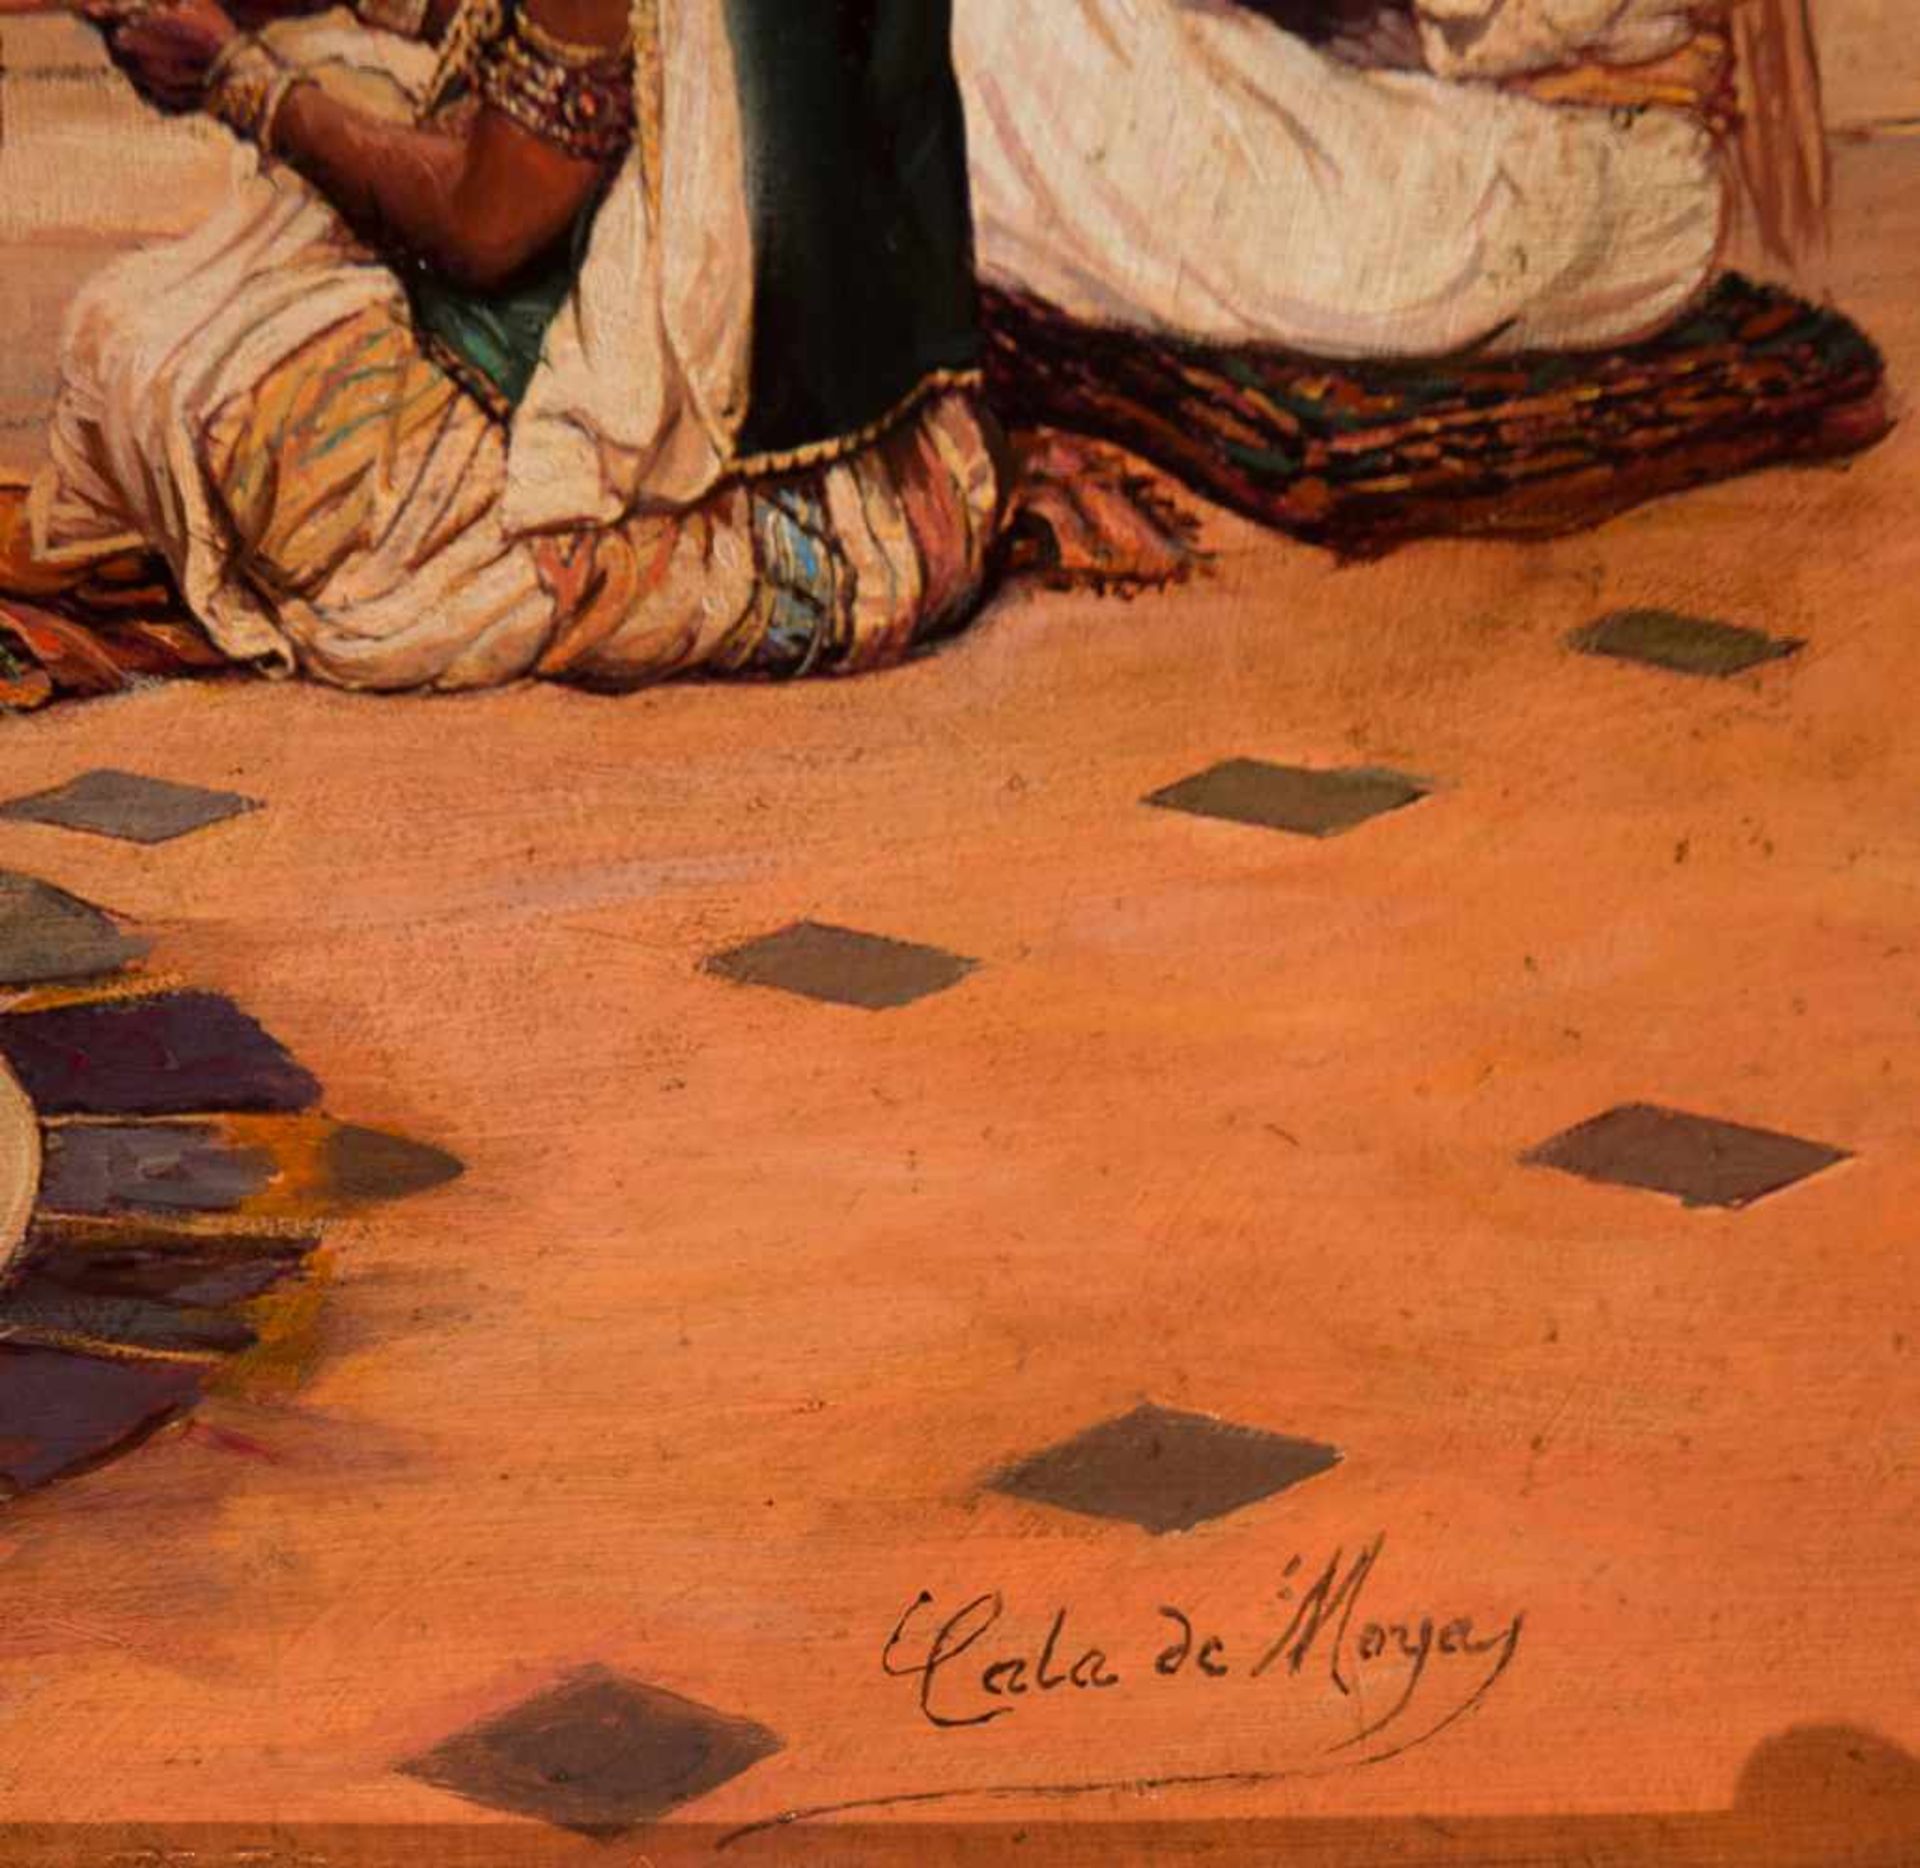 José Cala de Moya (Jerez de la Frontera, 1850 - Paris, 1891)Pair of oils on canvas. Both signed. - Bild 15 aus 15